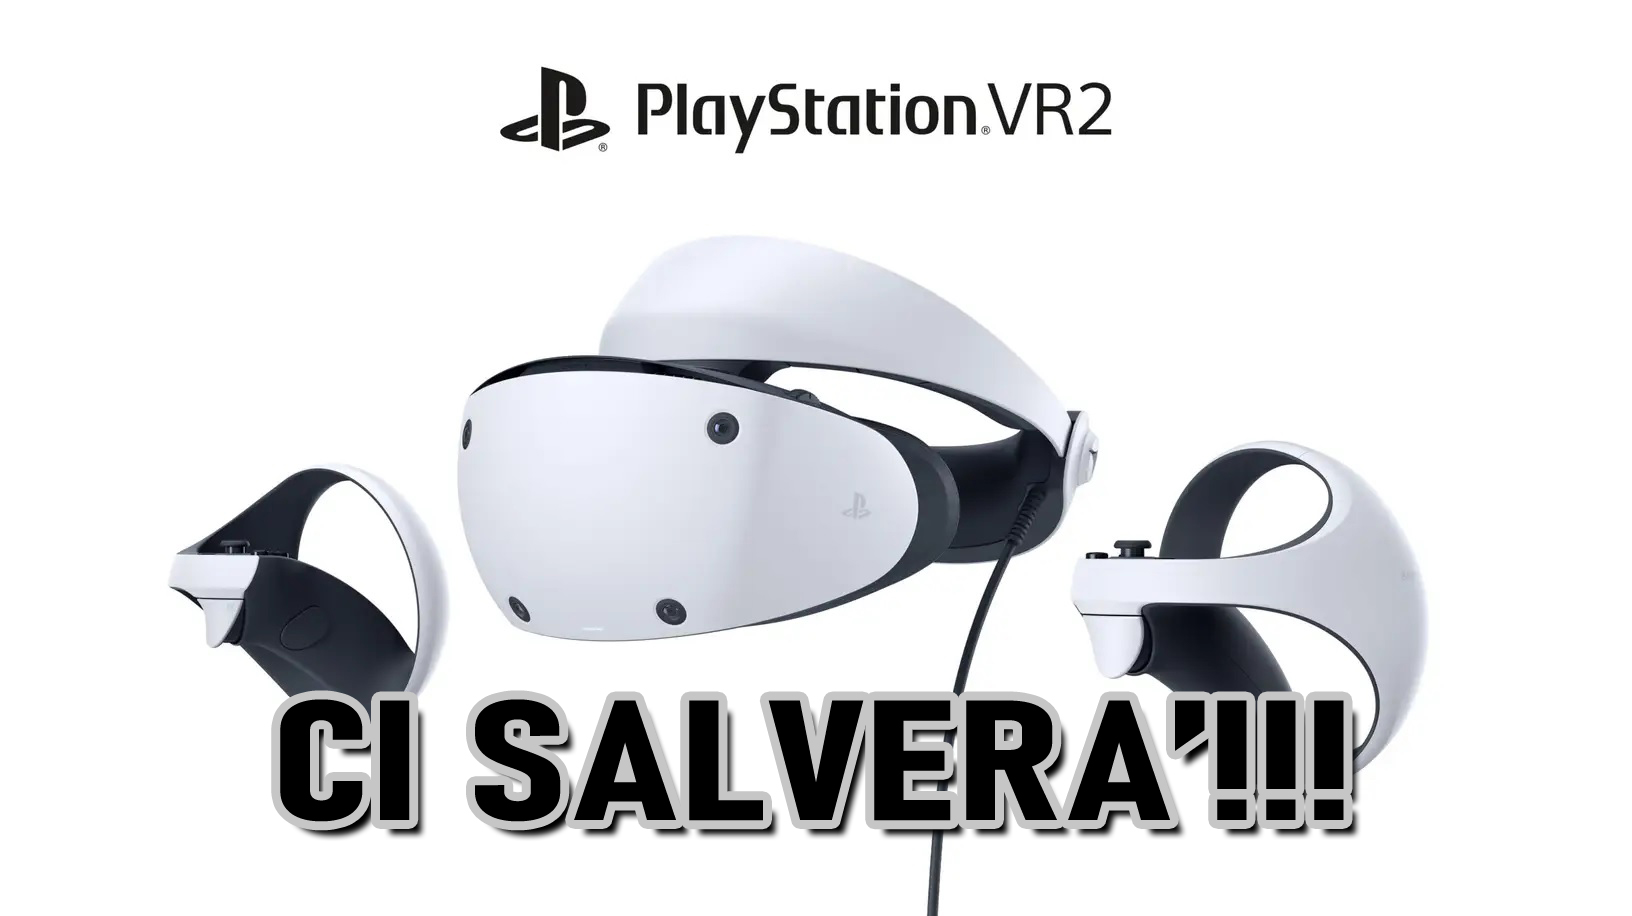 Ecco perchè Playstation VR2 salverà il gaming in realtà virtuale